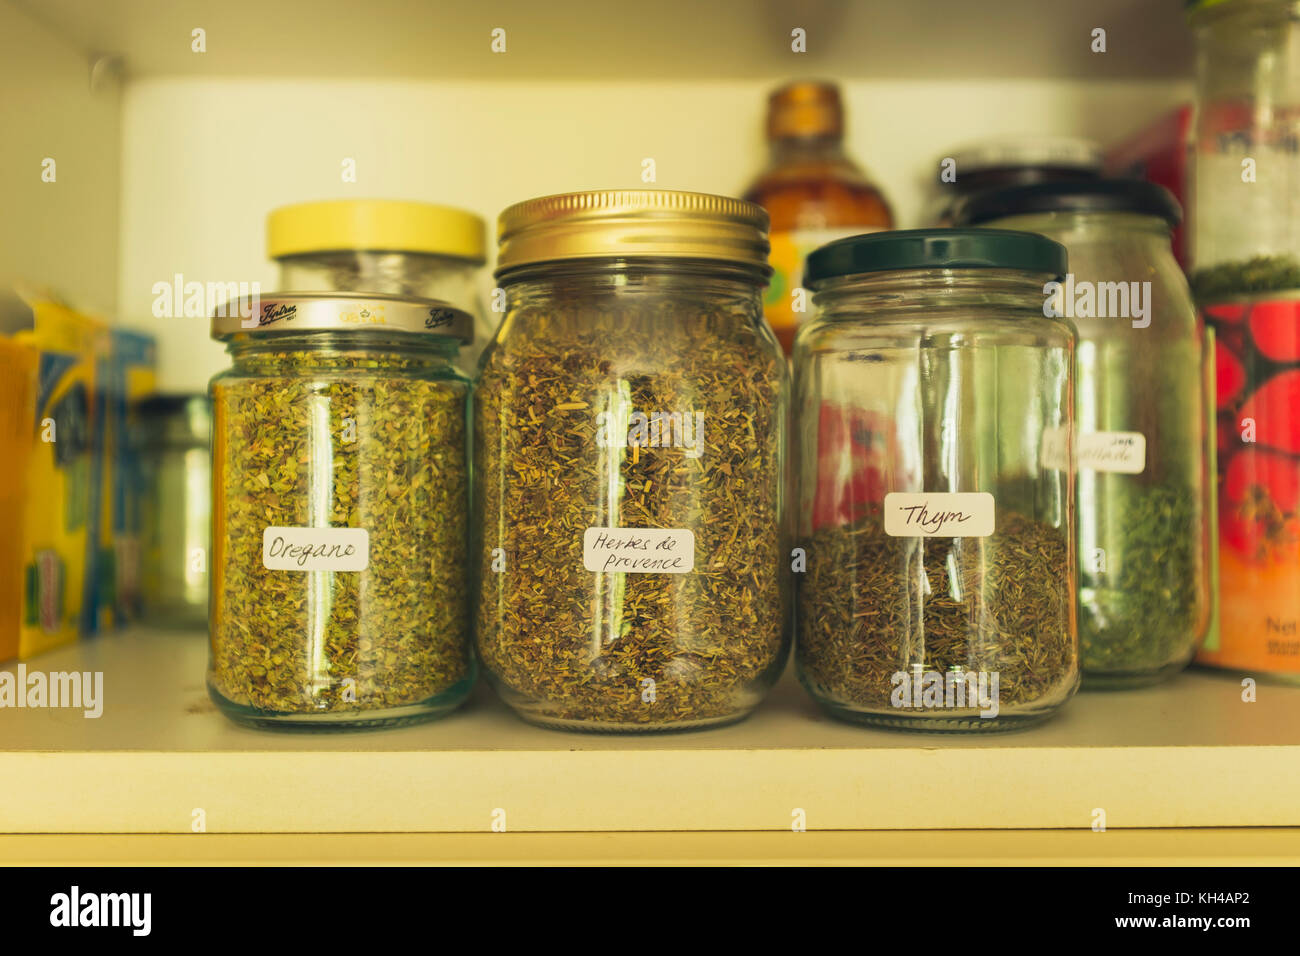 Les herbes stockées dans des bouteilles en armoire de cuisine (les étiquettes sont en français, d'où les herbes et de thym, le thym et les herbes pas) Banque D'Images